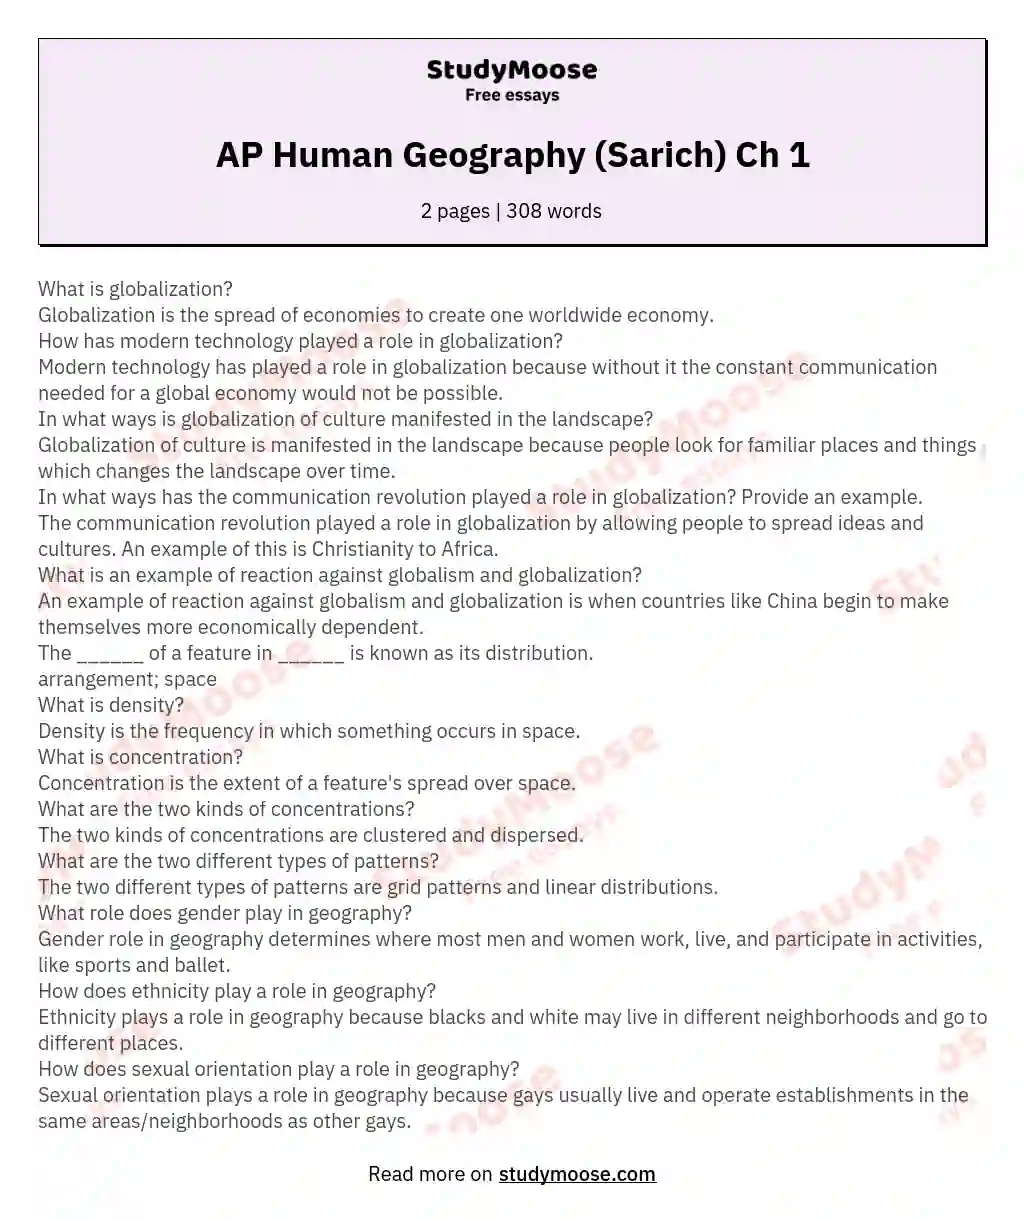 AP Human Geography (Sarich) Ch 1 essay